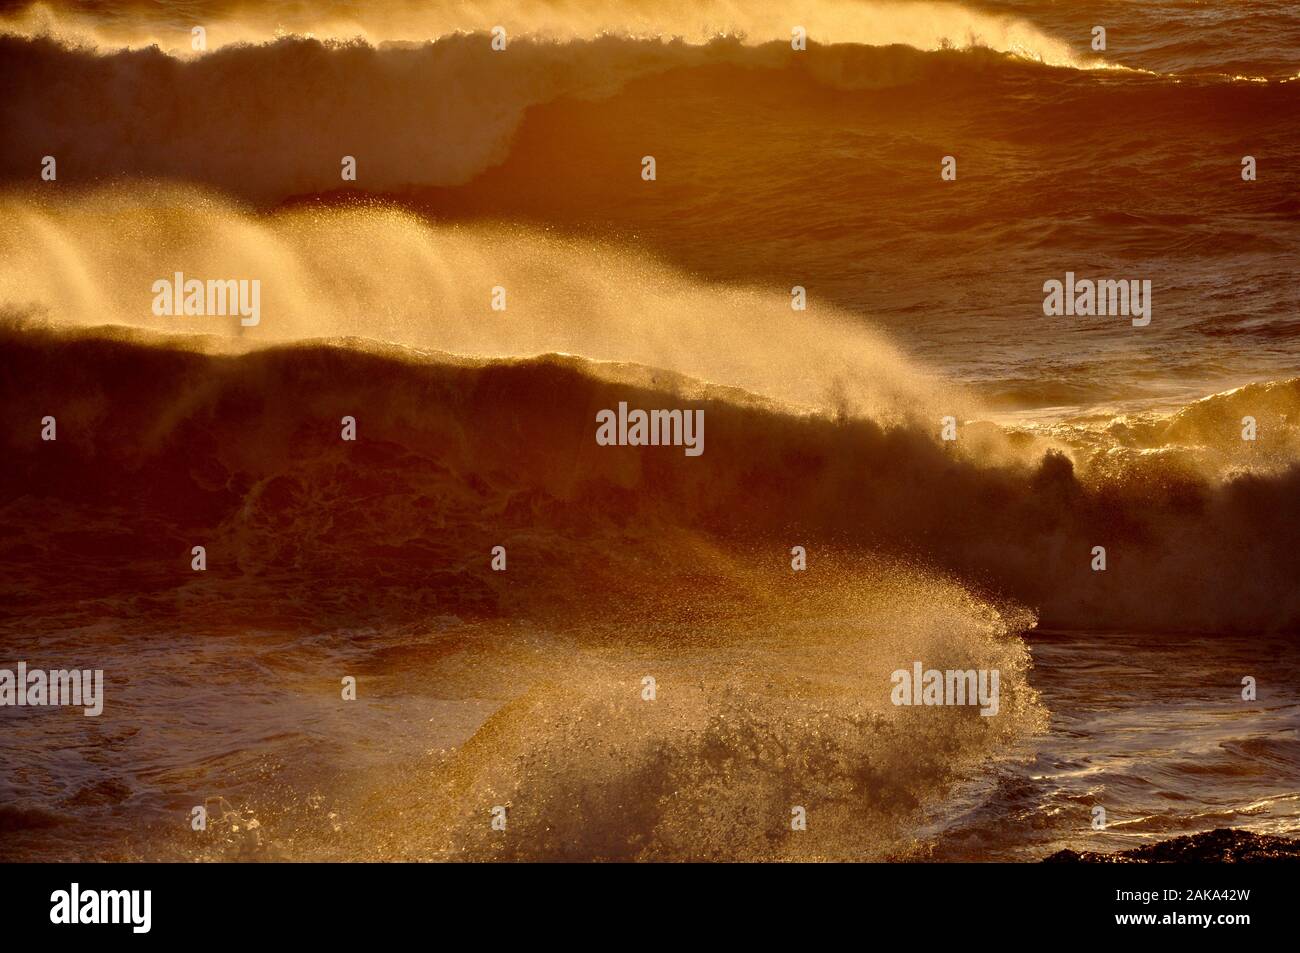 stormy sea - Italy Stock Photo